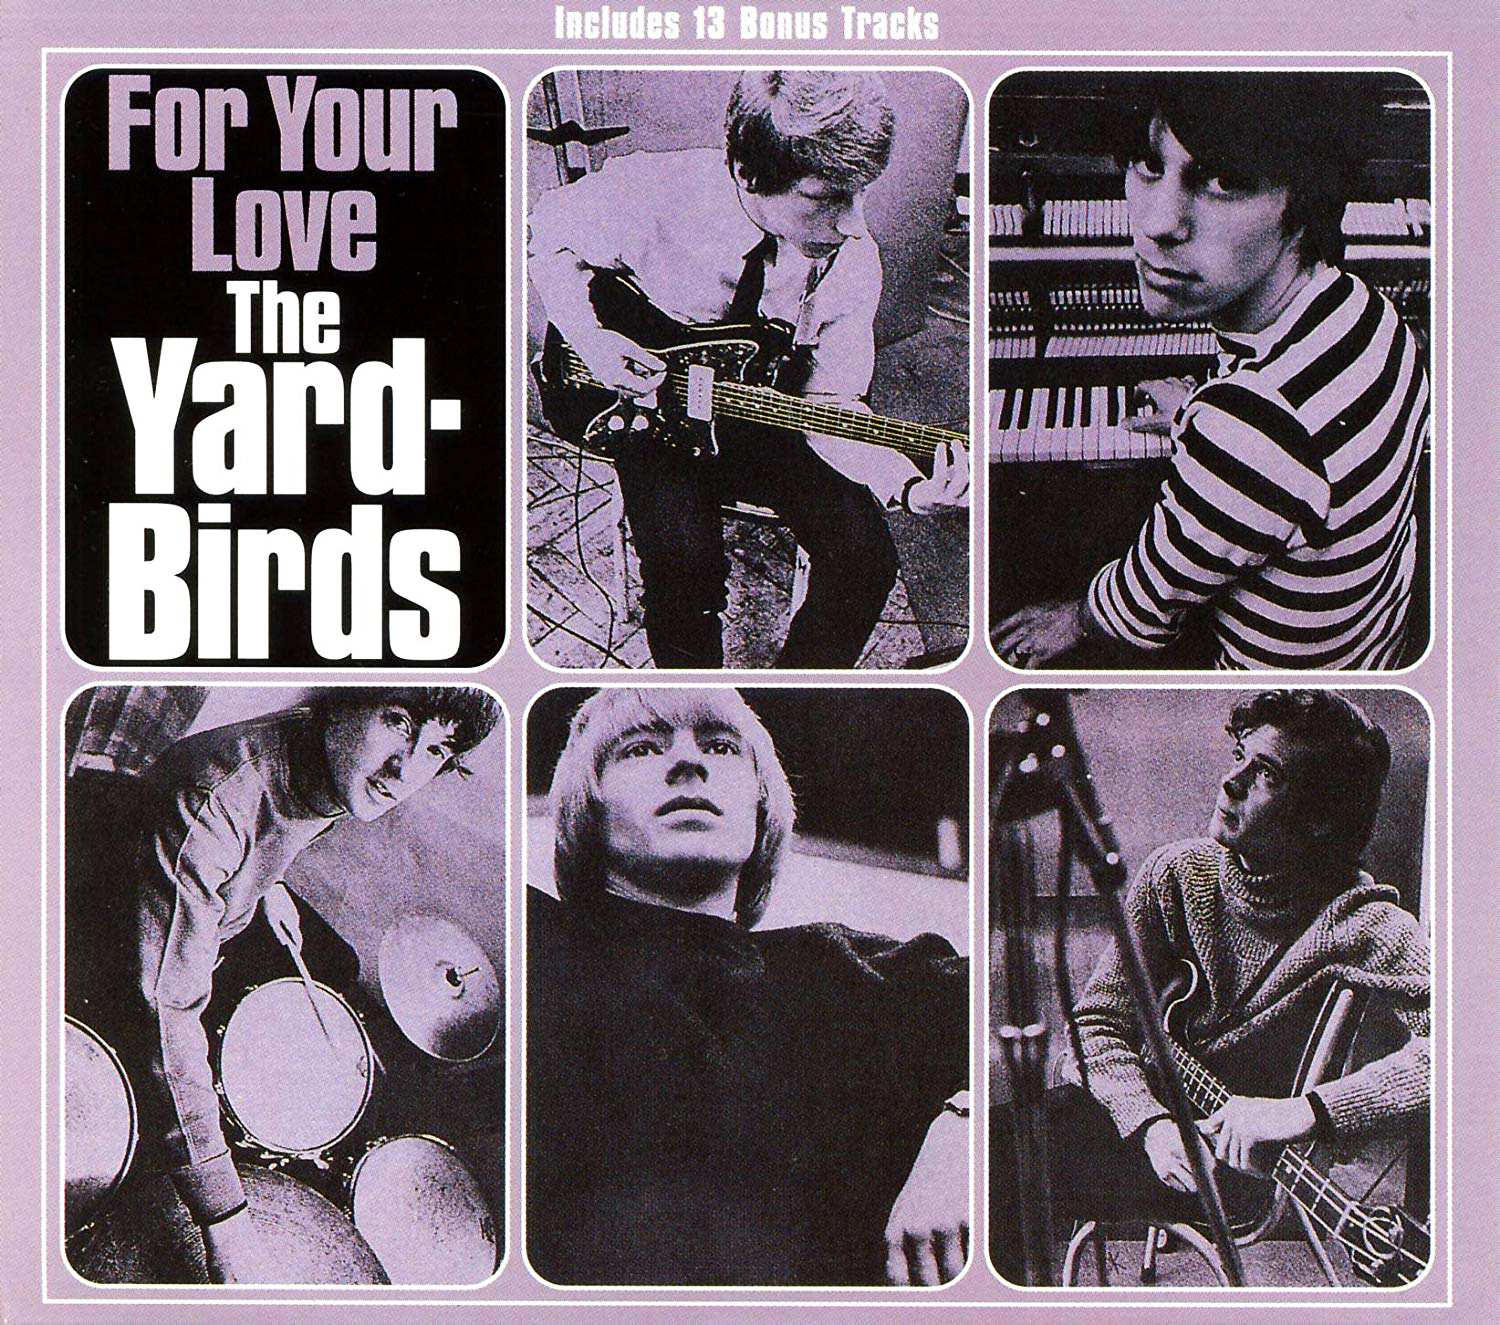 “Heart Full of Soul” - The Yardbirds 1965